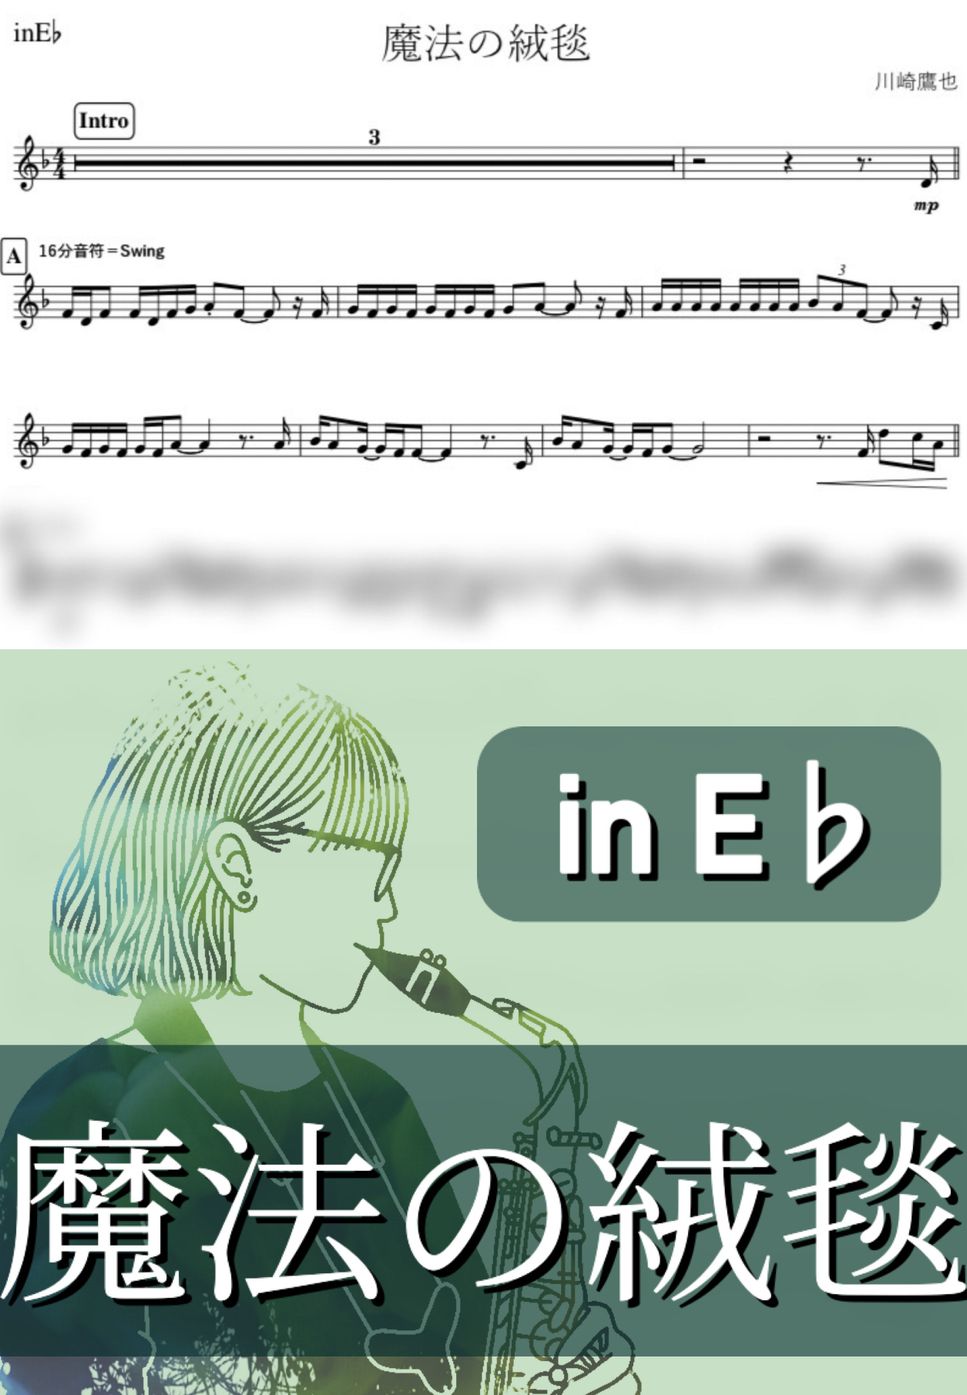 川崎鷹也 - 魔法の絨毯 (E♭) by kanamusic